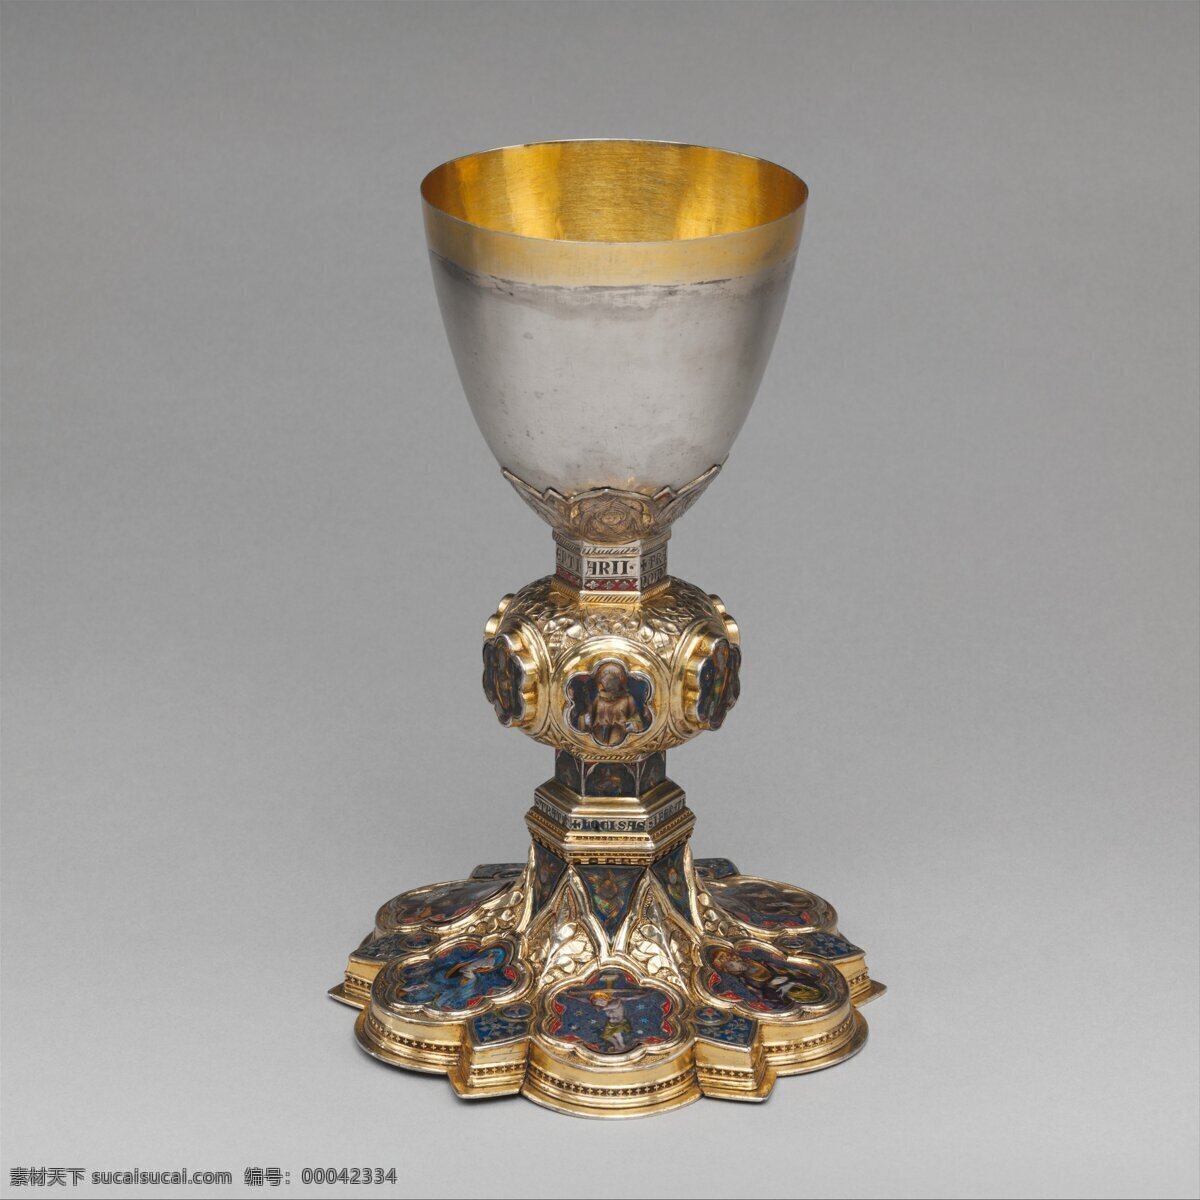 圣杯免费下载 基督教 中世纪 圣杯 器物 宗教用品 文化艺术